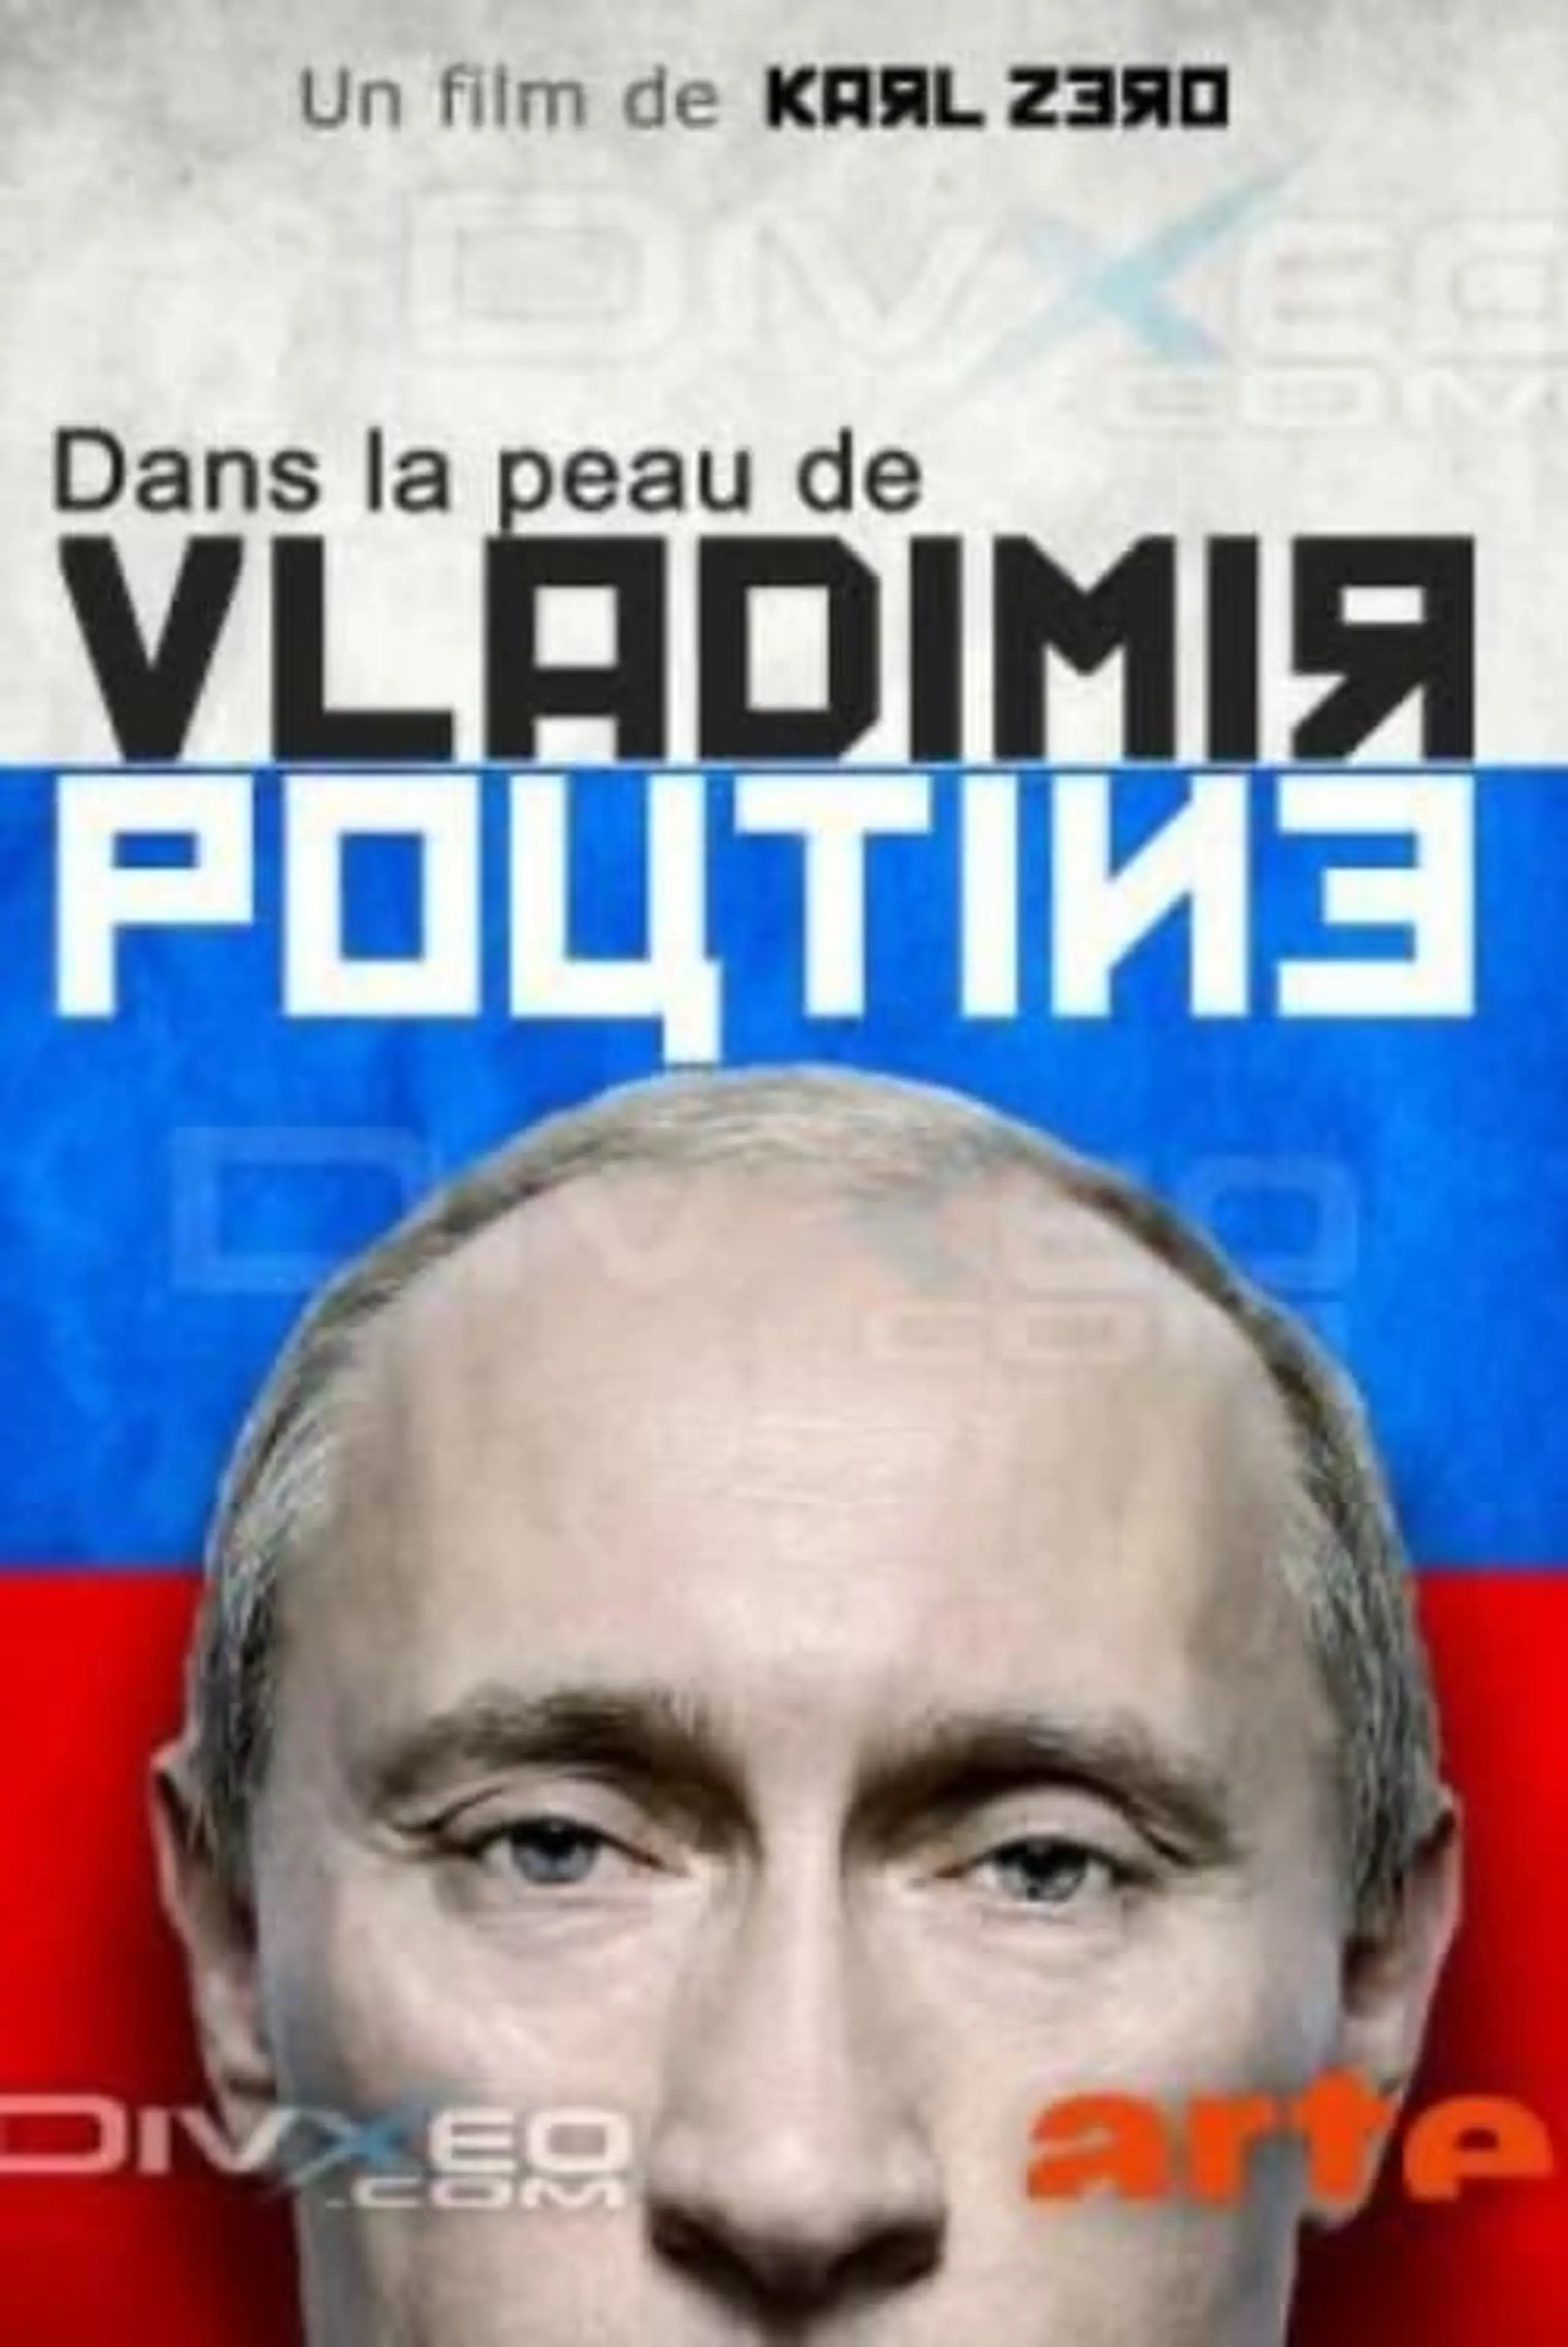 Being ... Putin